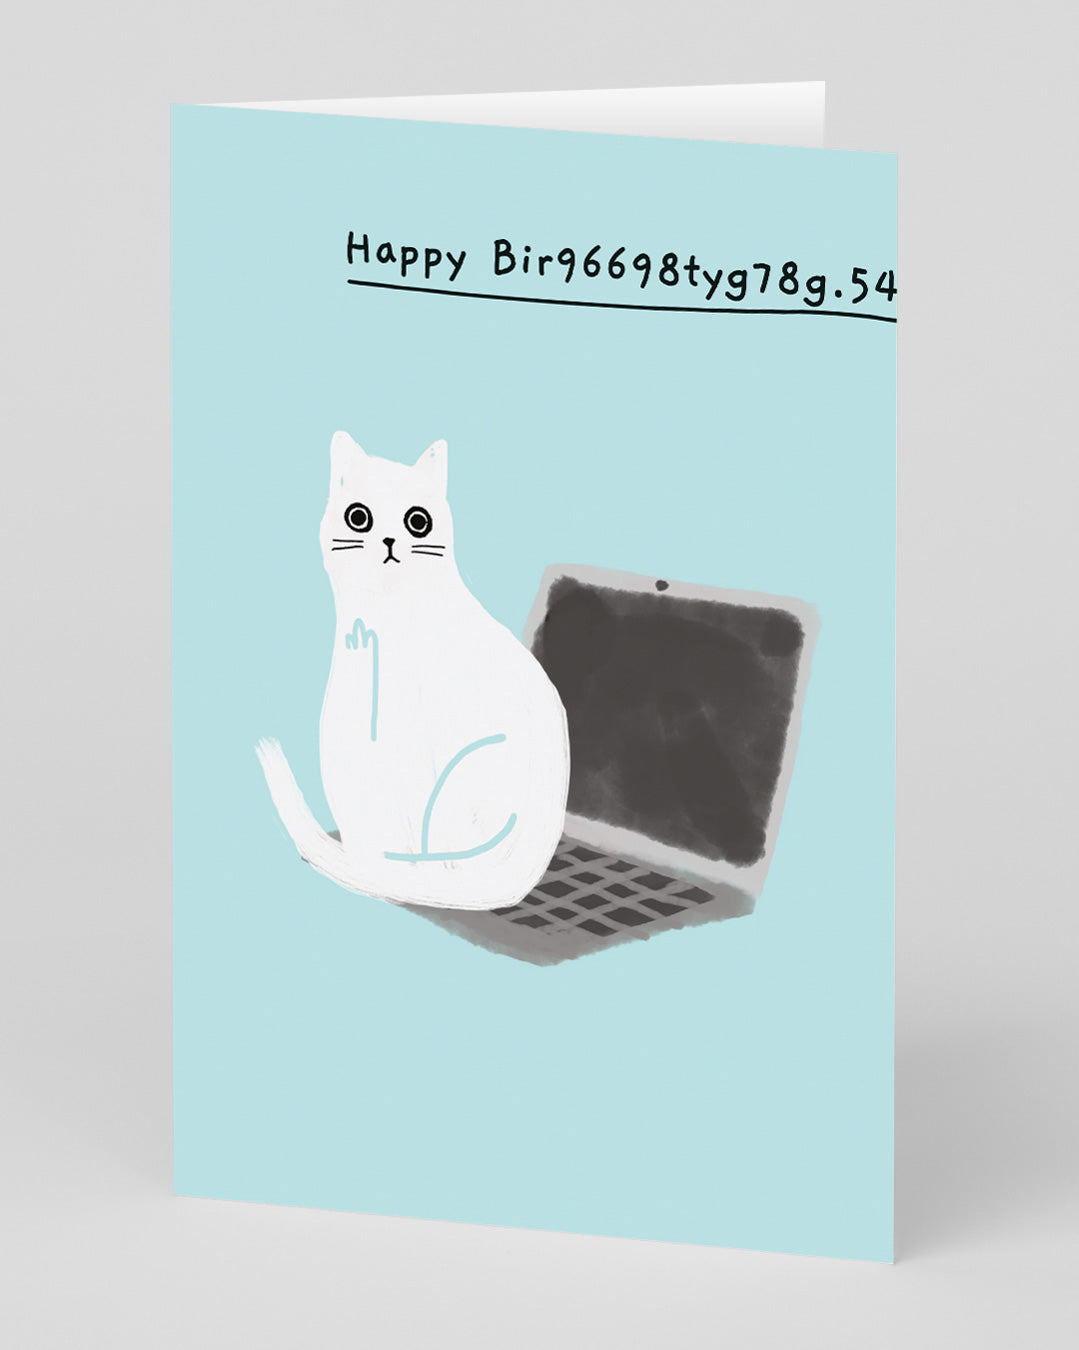 Funny Birthday Card Happy Bir9669.. Laptop Birthday Card